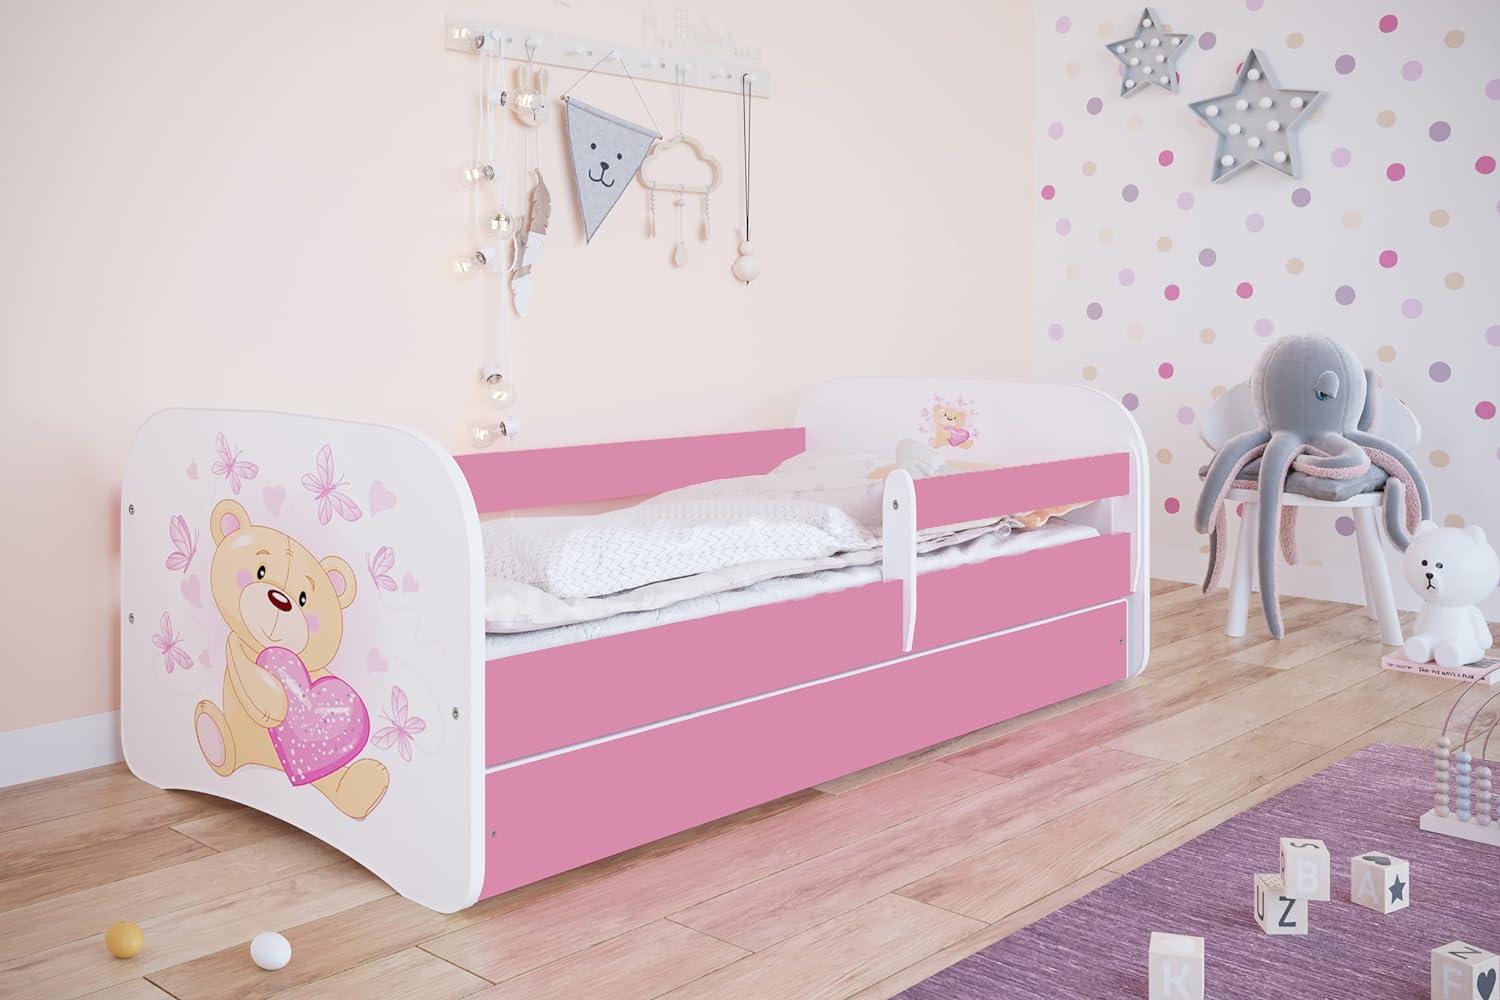 Kocot Kids 'Teddy mit Schmetterlingen' Einzelbett pink/weiß 80x160 cm inkl. Rausfallschutz, Matratze, Schublade und Lattenrost Bild 1